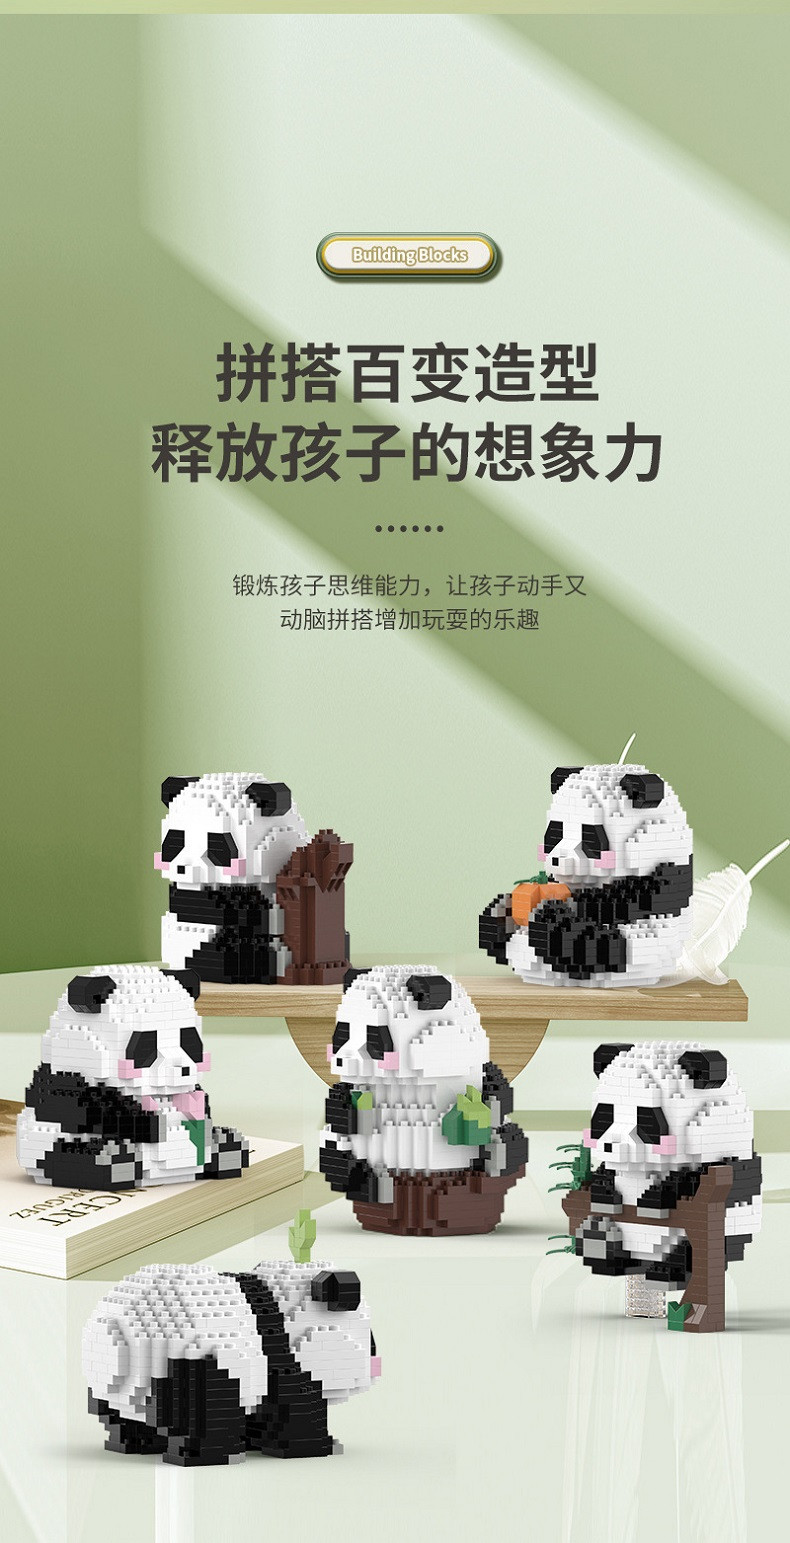 行科 熊猫小颗粒拼装积木玩具立体拼图礼品益智儿童节礼物6岁以上